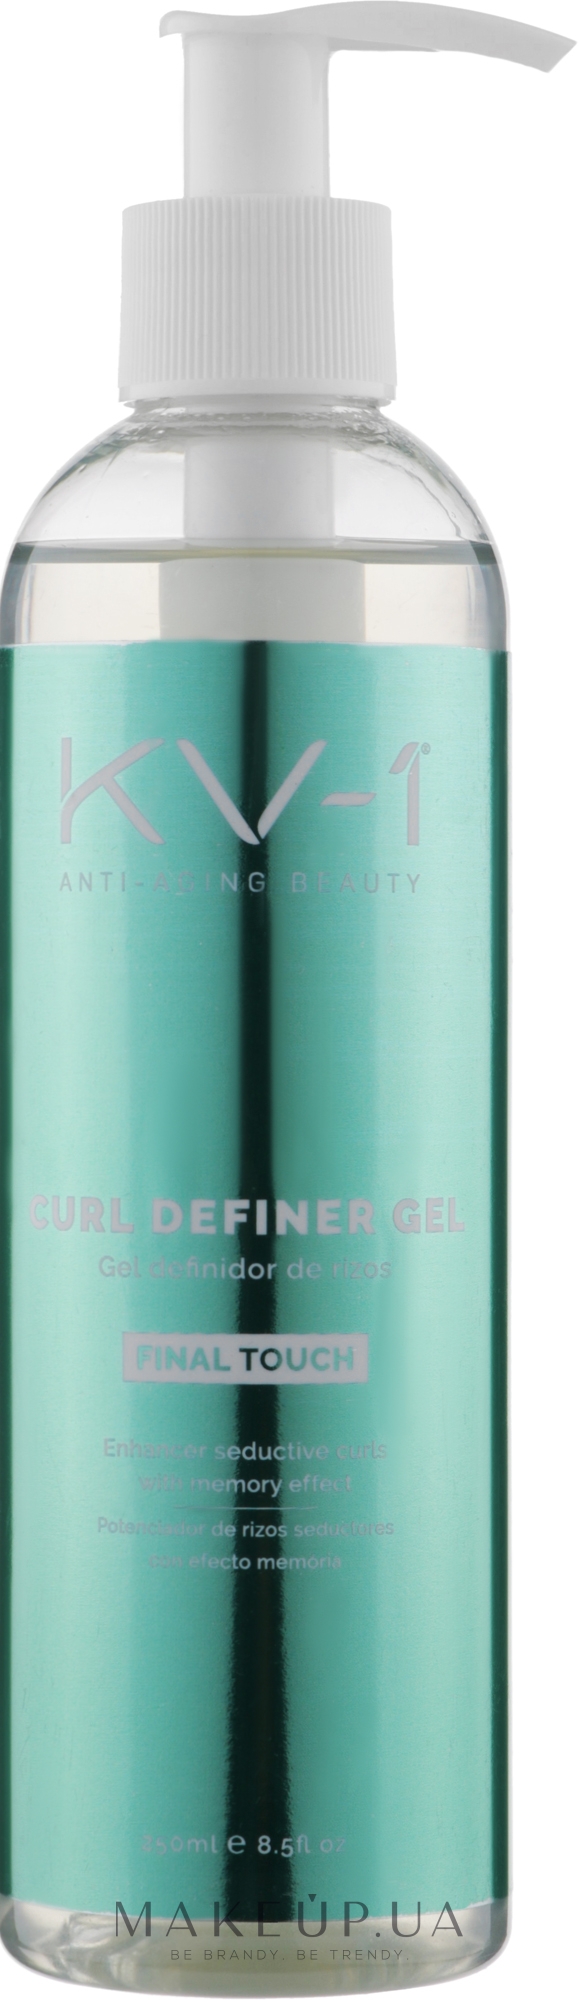 Гель для завивки локонов - KV-1 Final Touch Curl Definer Gel  — фото 250ml